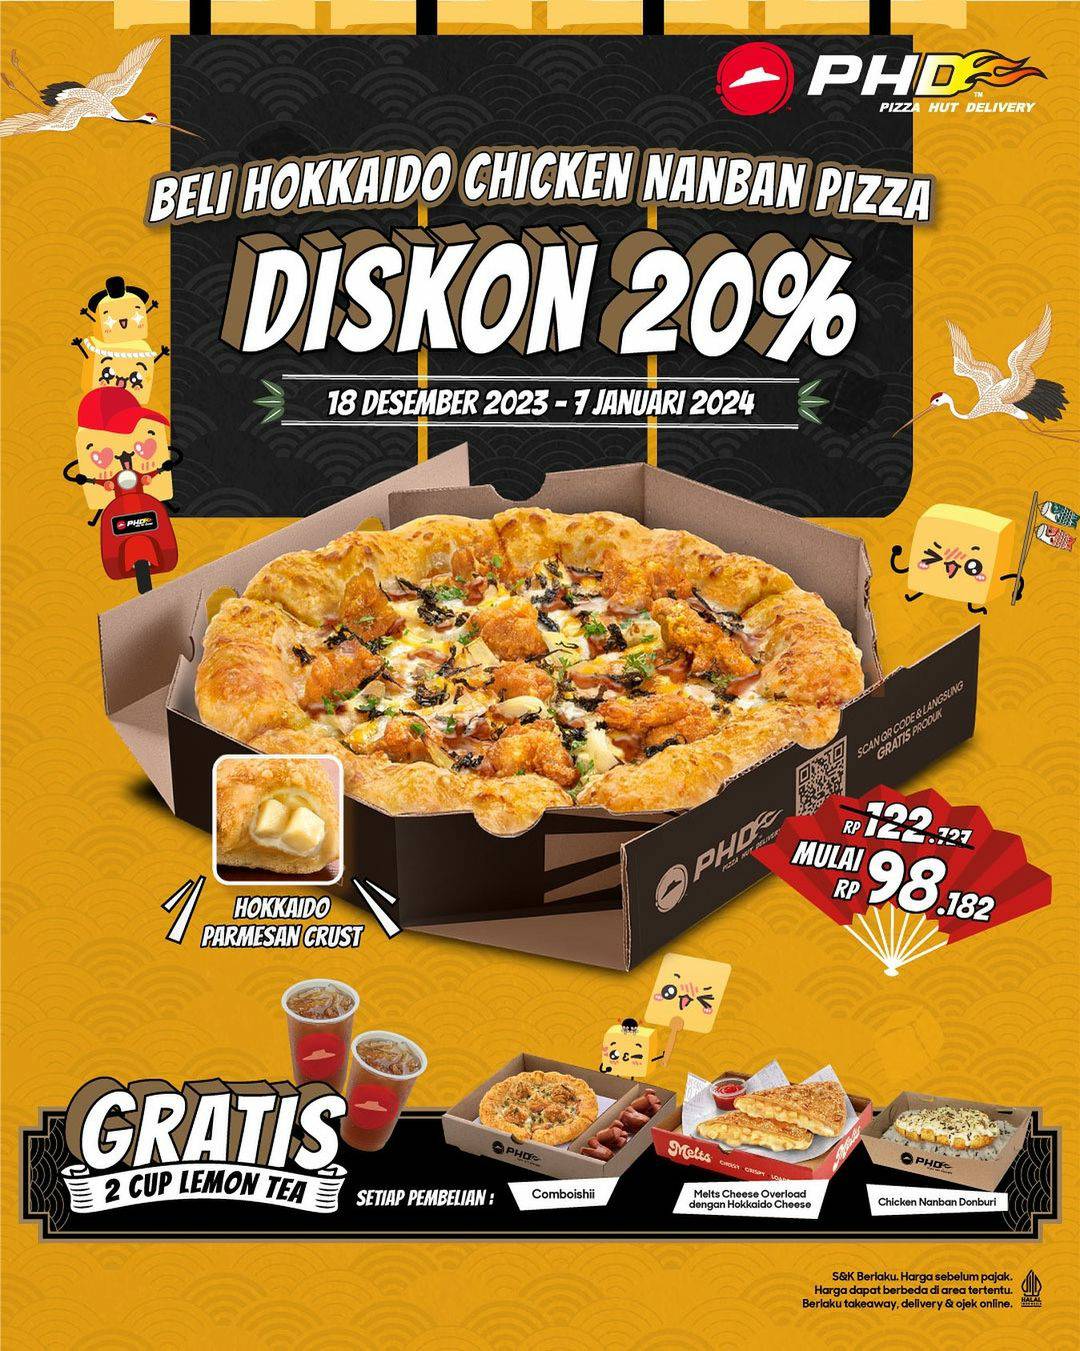 Promo PHD Beli Hokkaido Chicken Nanban Diskon 20%